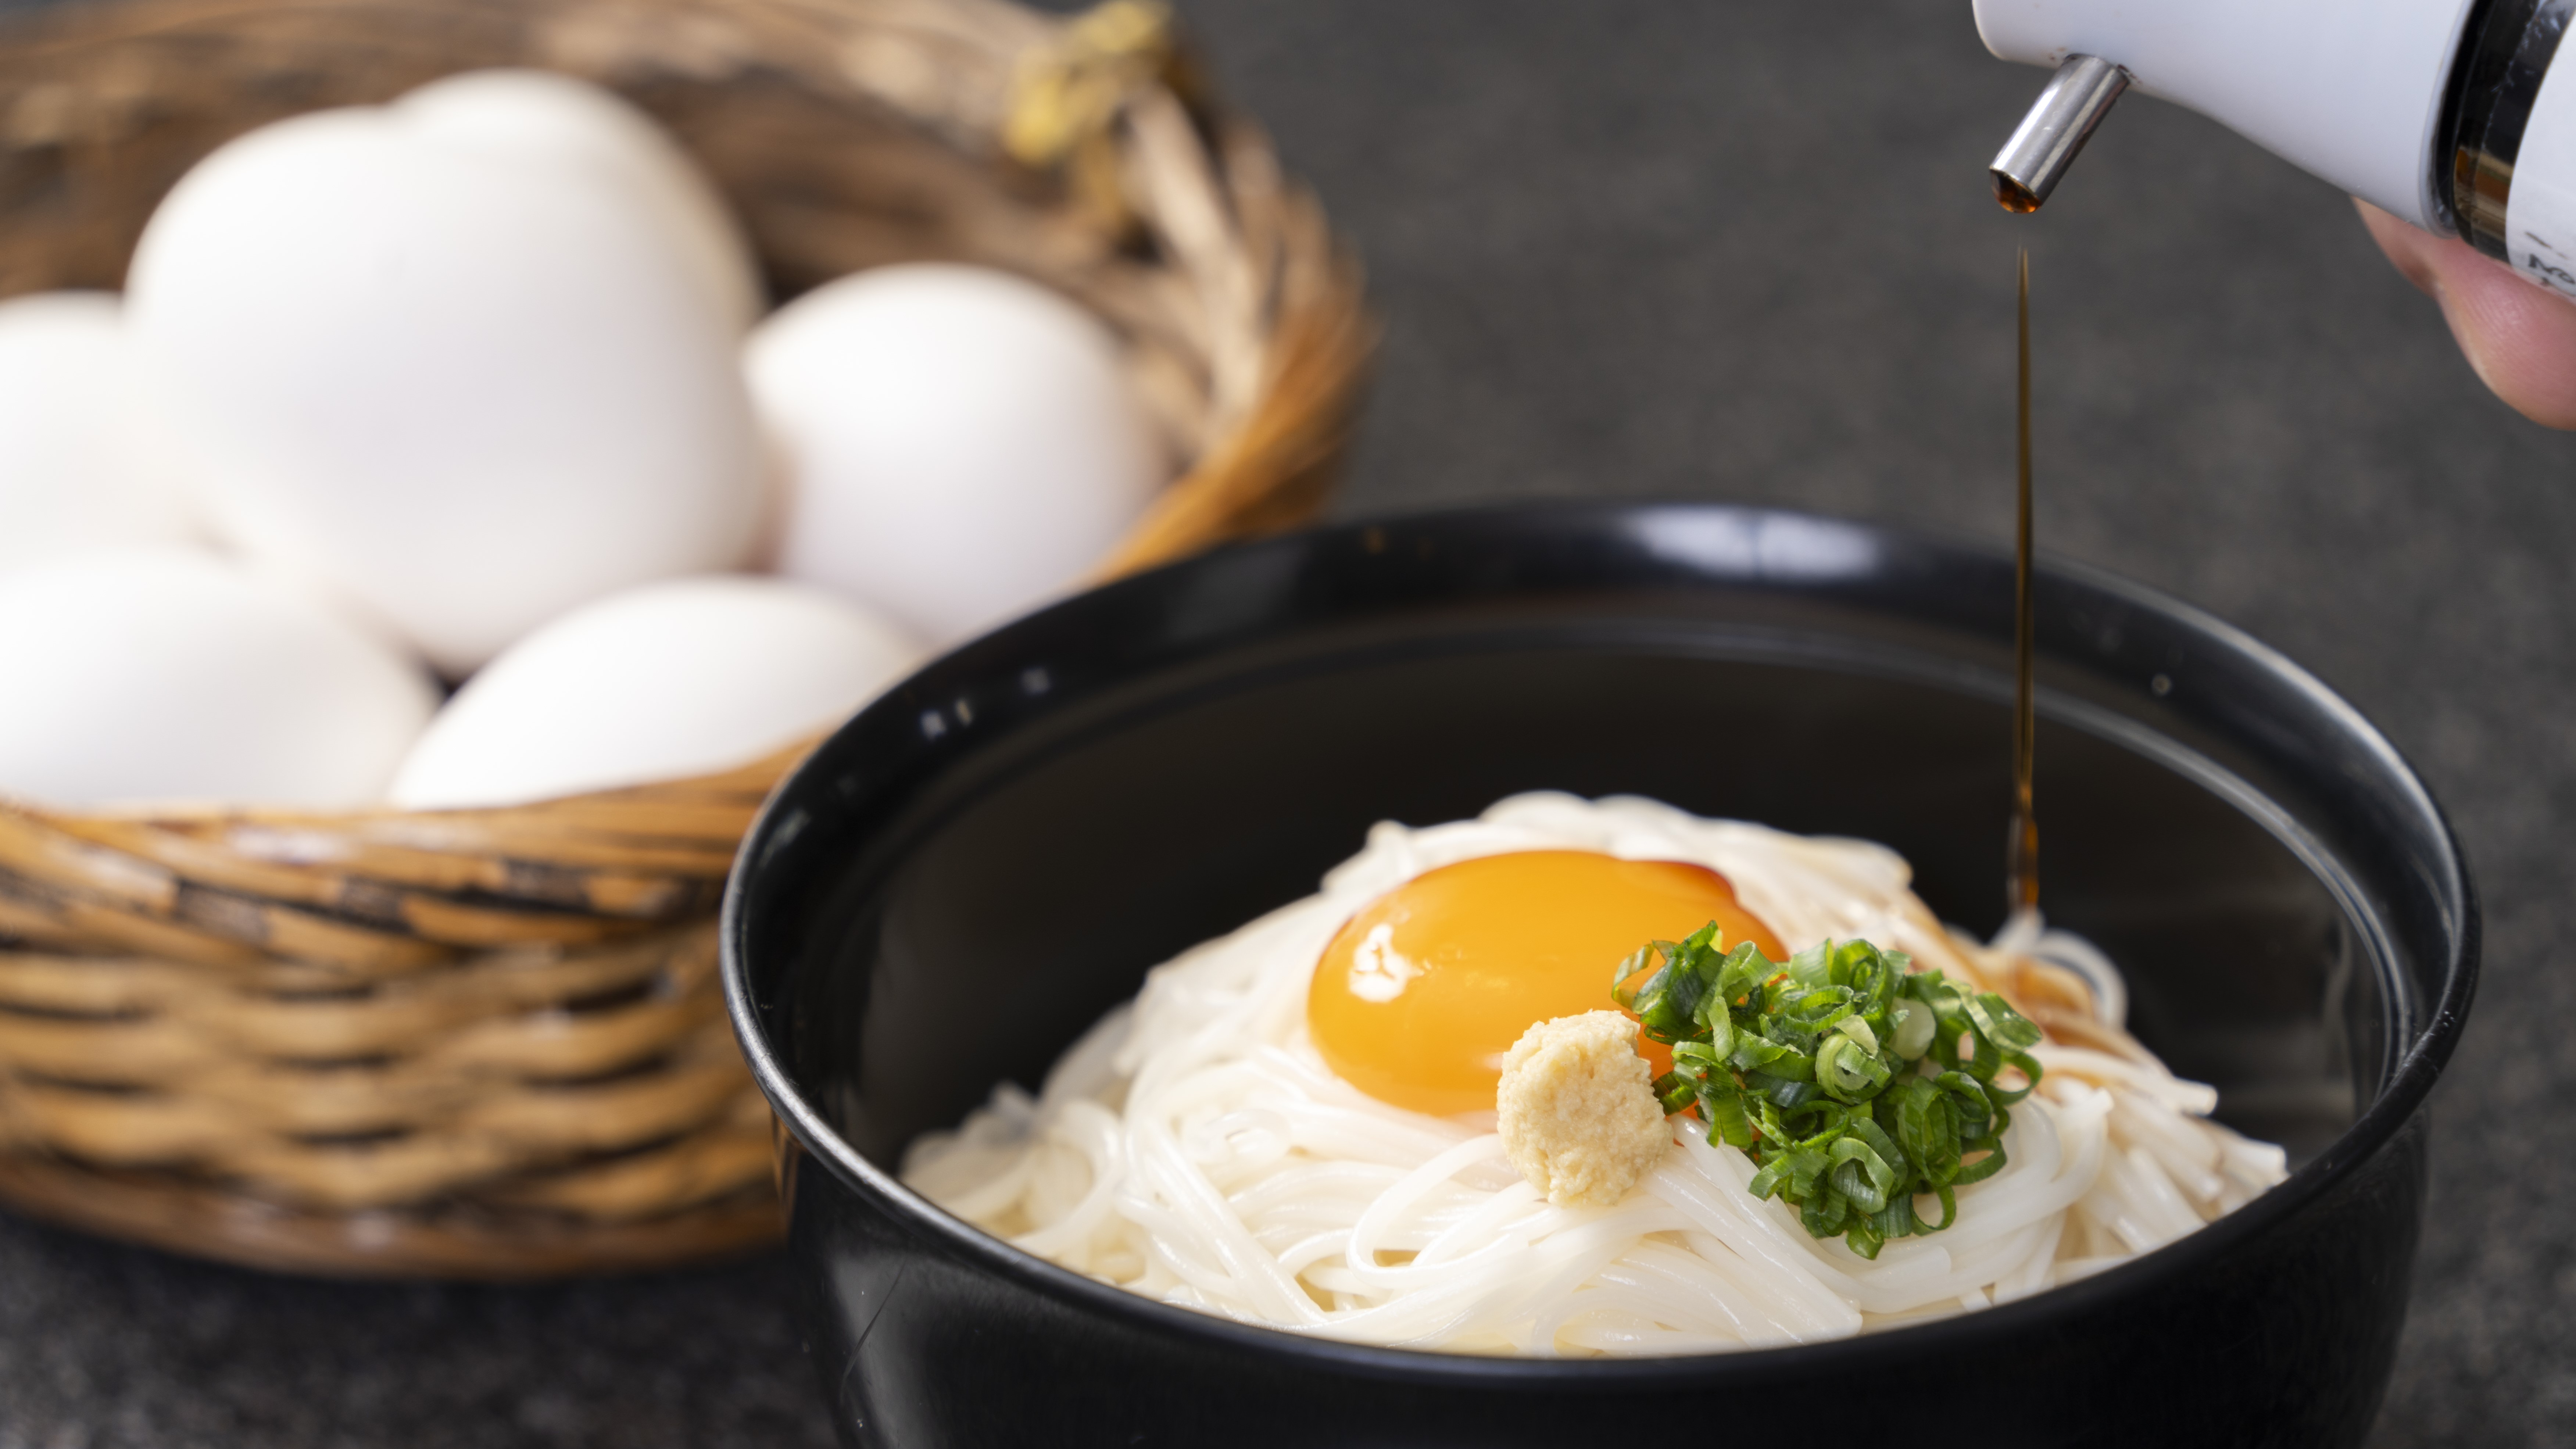 【朝食バイキング】かまたま素麺